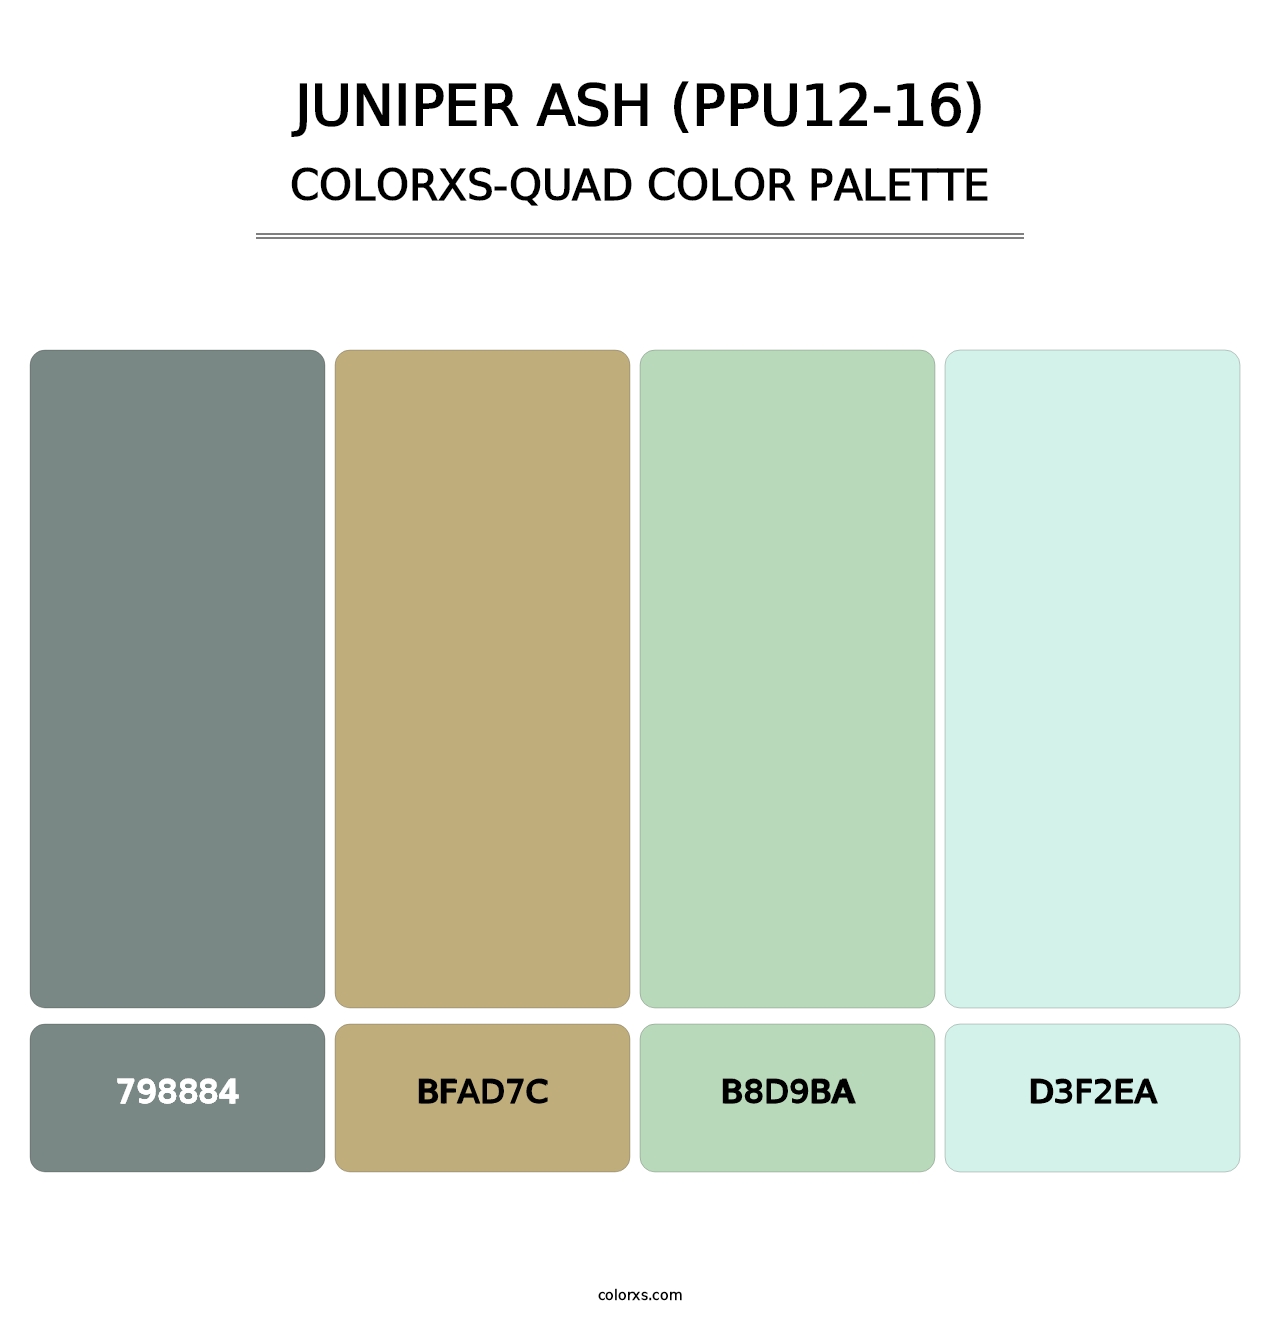 Juniper Ash (PPU12-16) - Colorxs Quad Palette